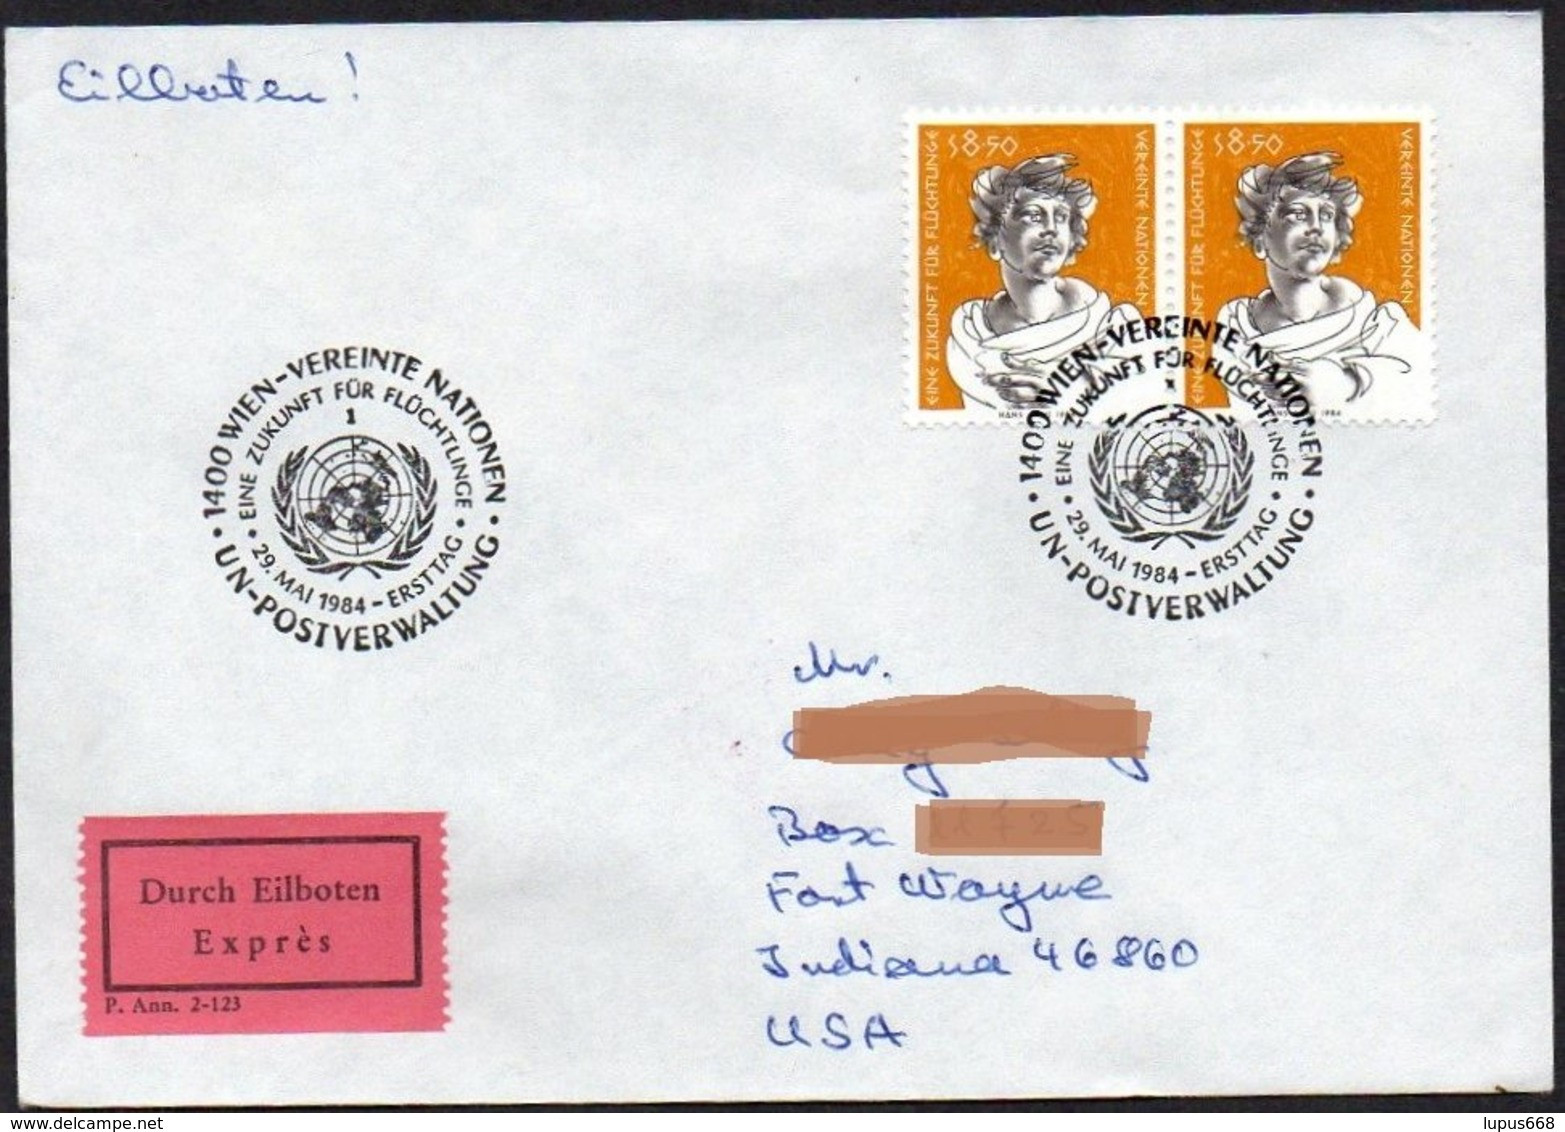 UNO - Wien  1984  MiNr. 44 (2)  Auf Express - Brief In Die U.S.A  ,  FDC; Eine Zukunft Für Flüchtlinge - Lettres & Documents